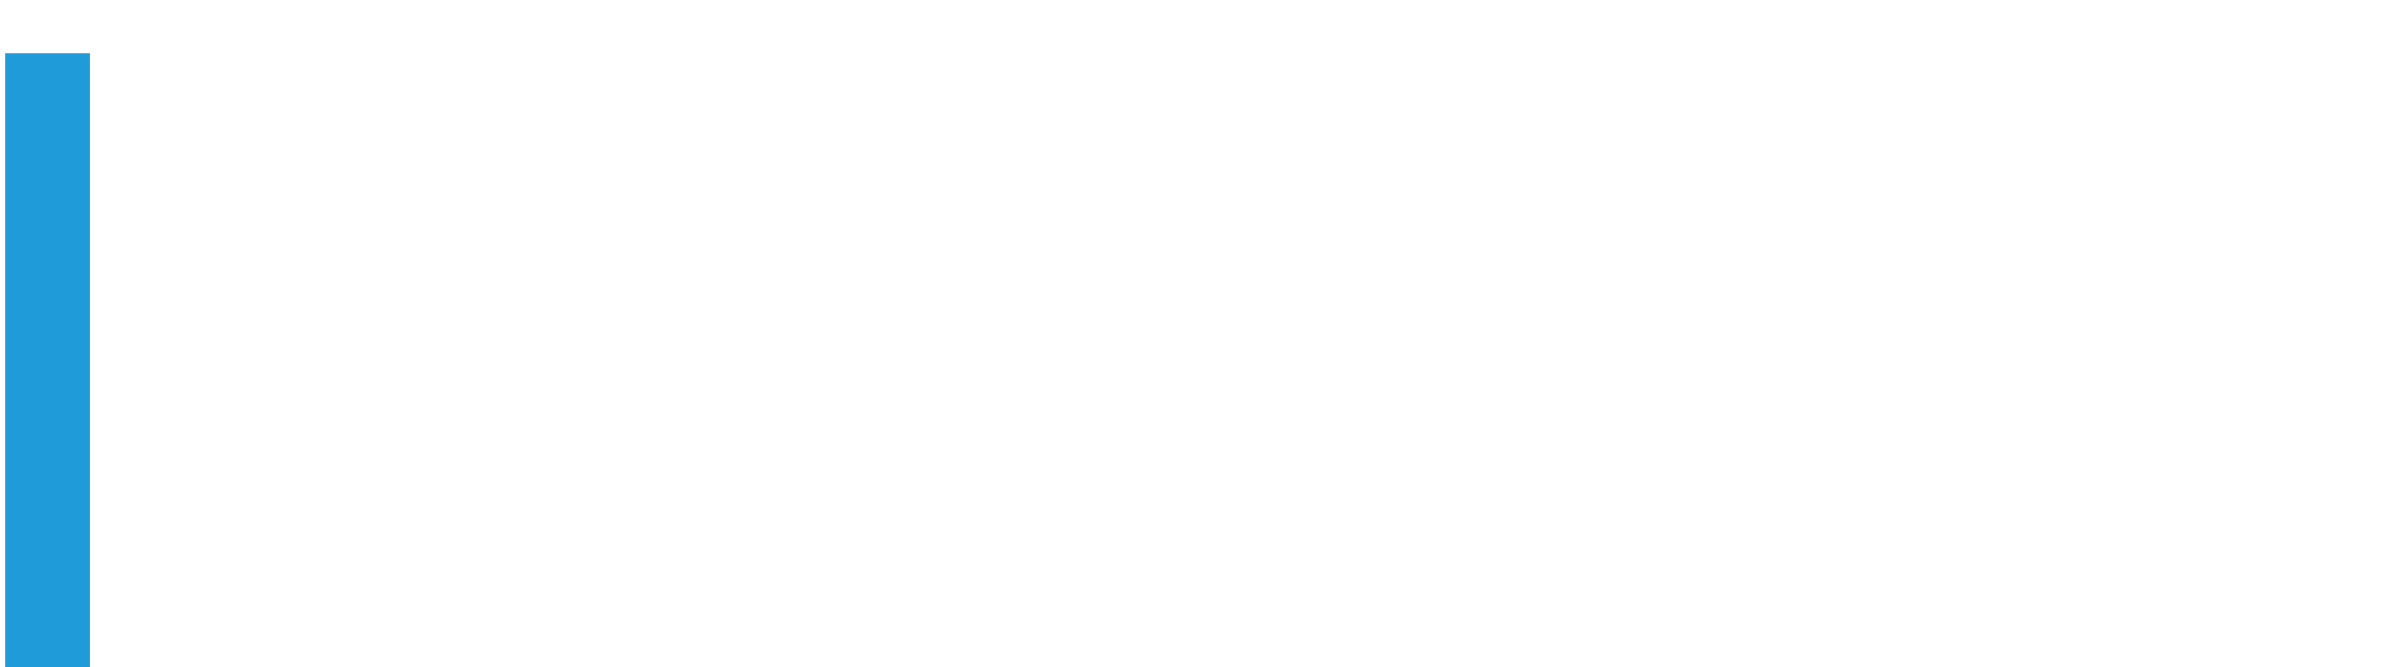 MIPCOM 2021 Logo